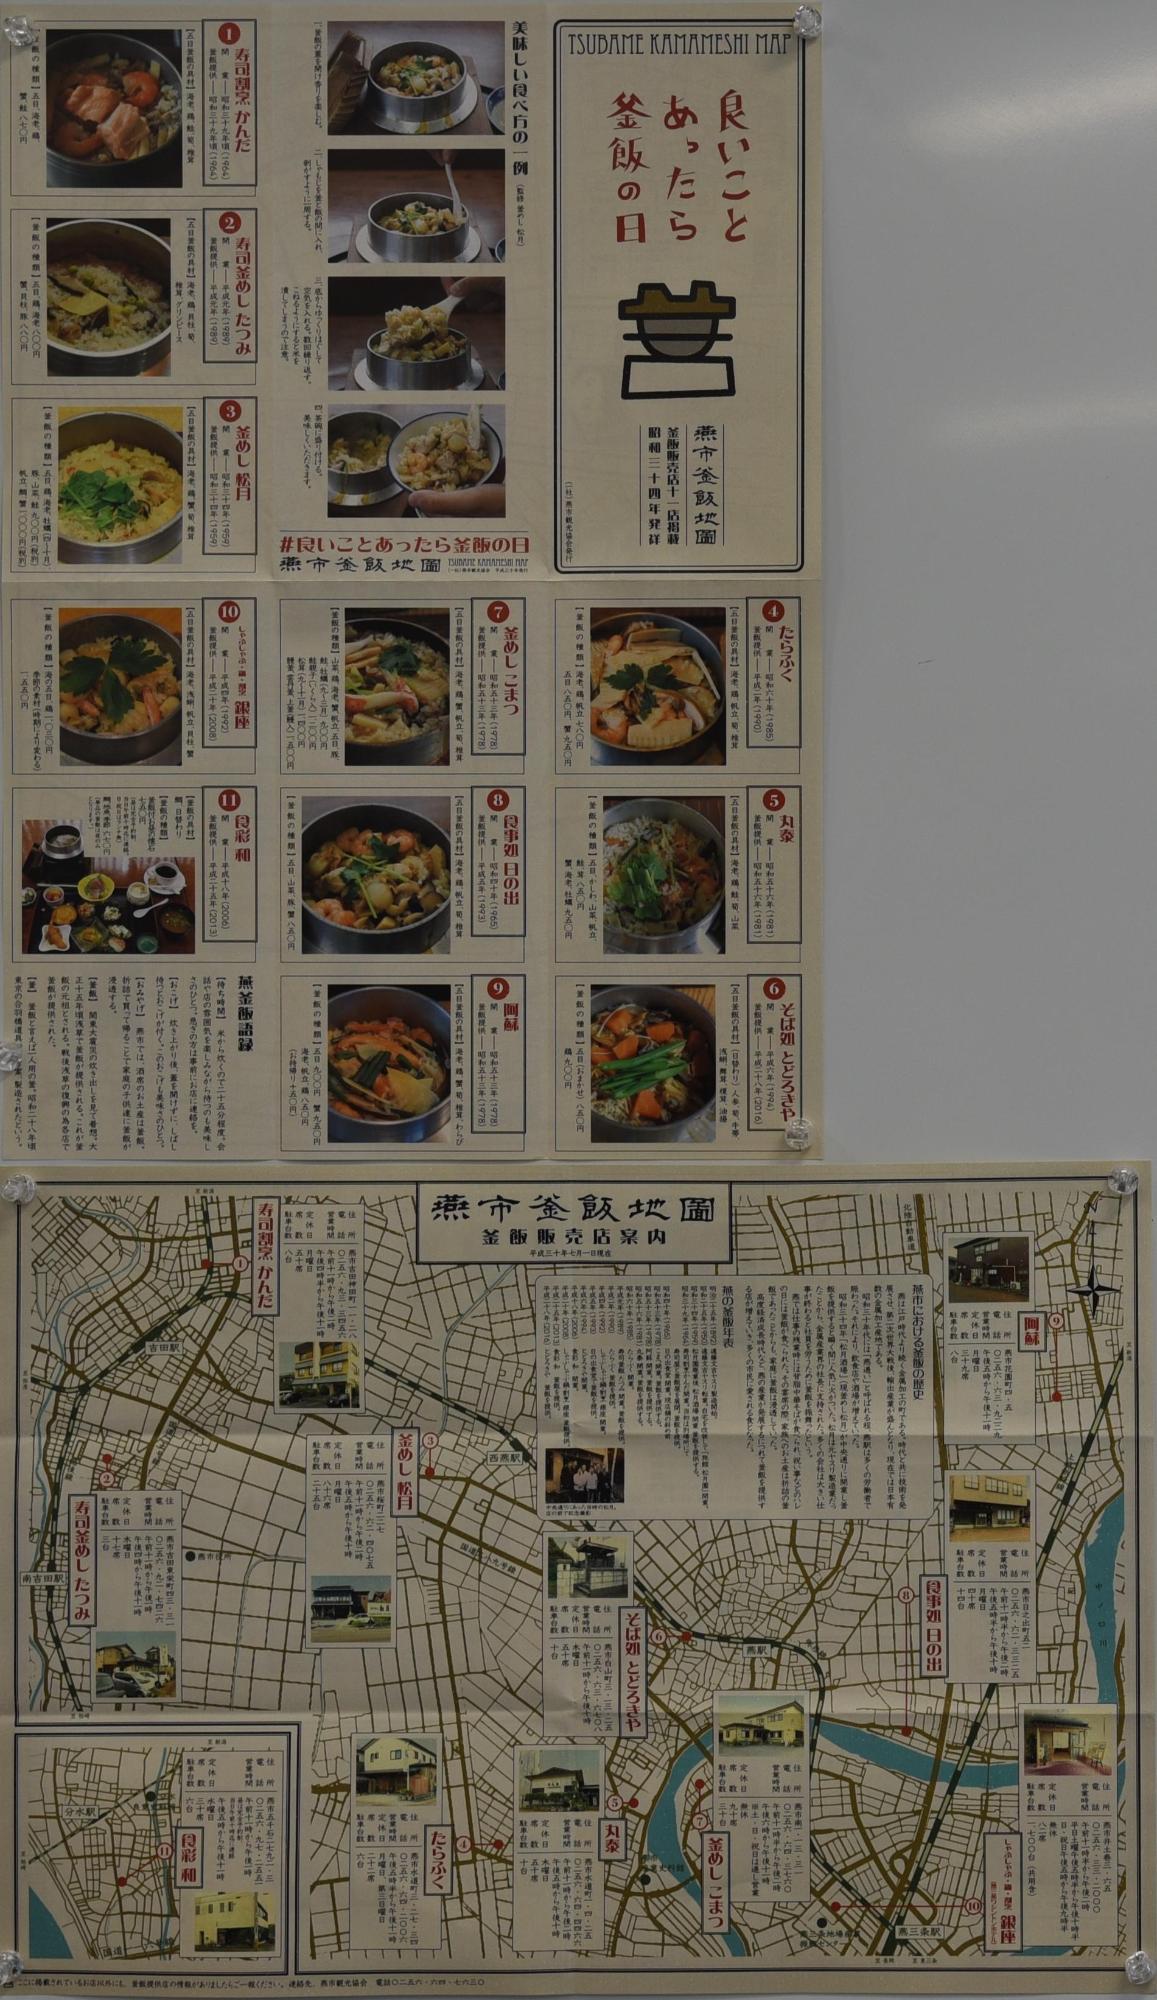 様々な種類の釜めしが紹介されている「燕市釜飯地図」の写真